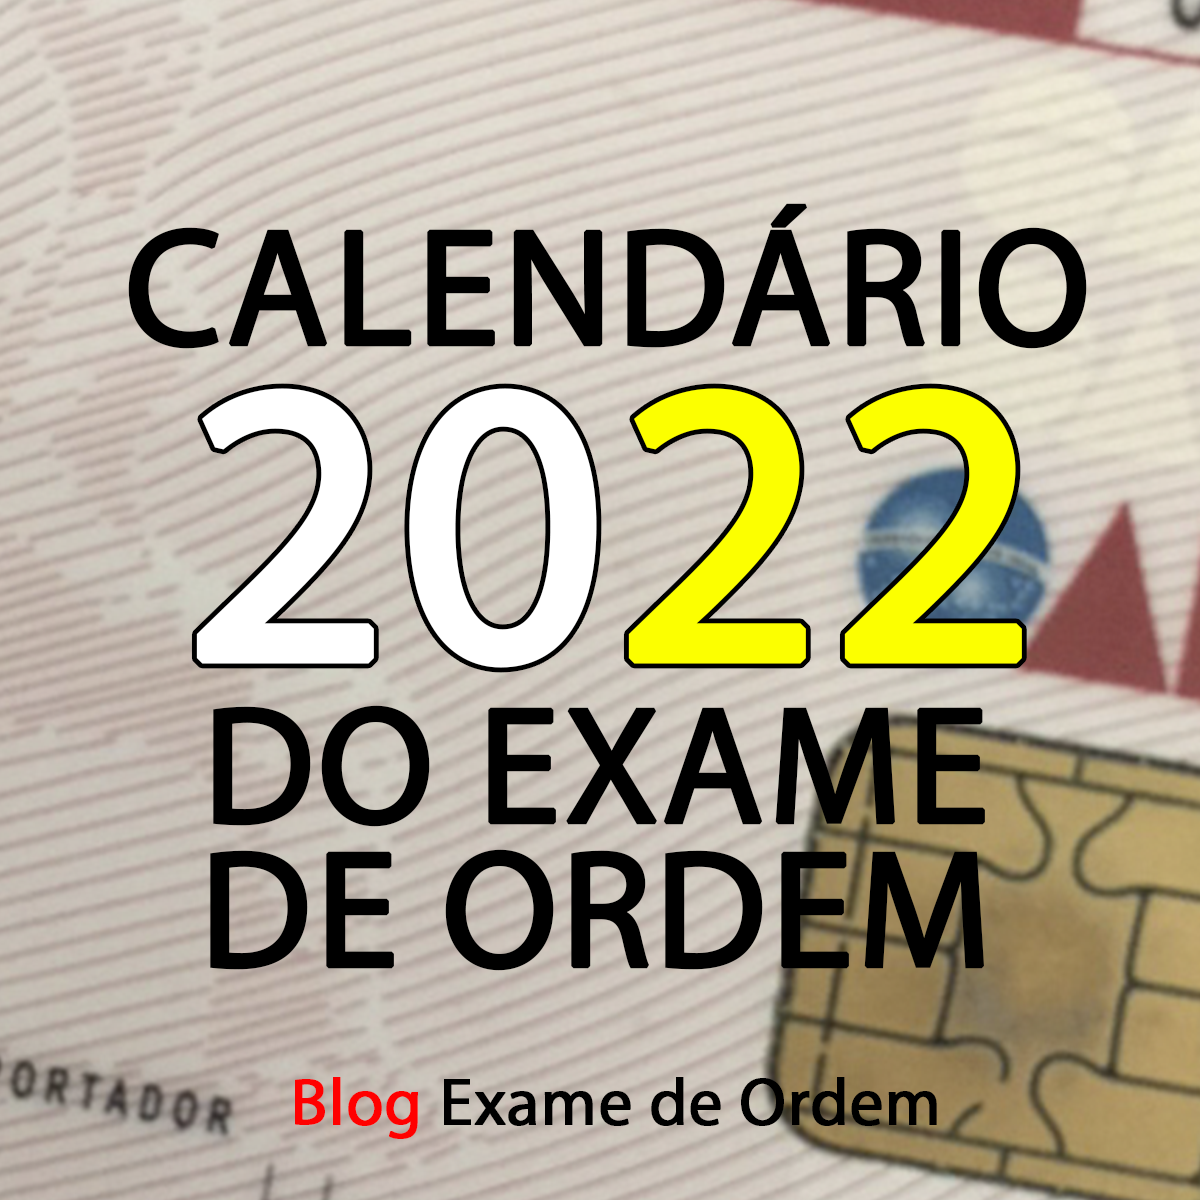 Calendário 2022 do Exame de Ordem